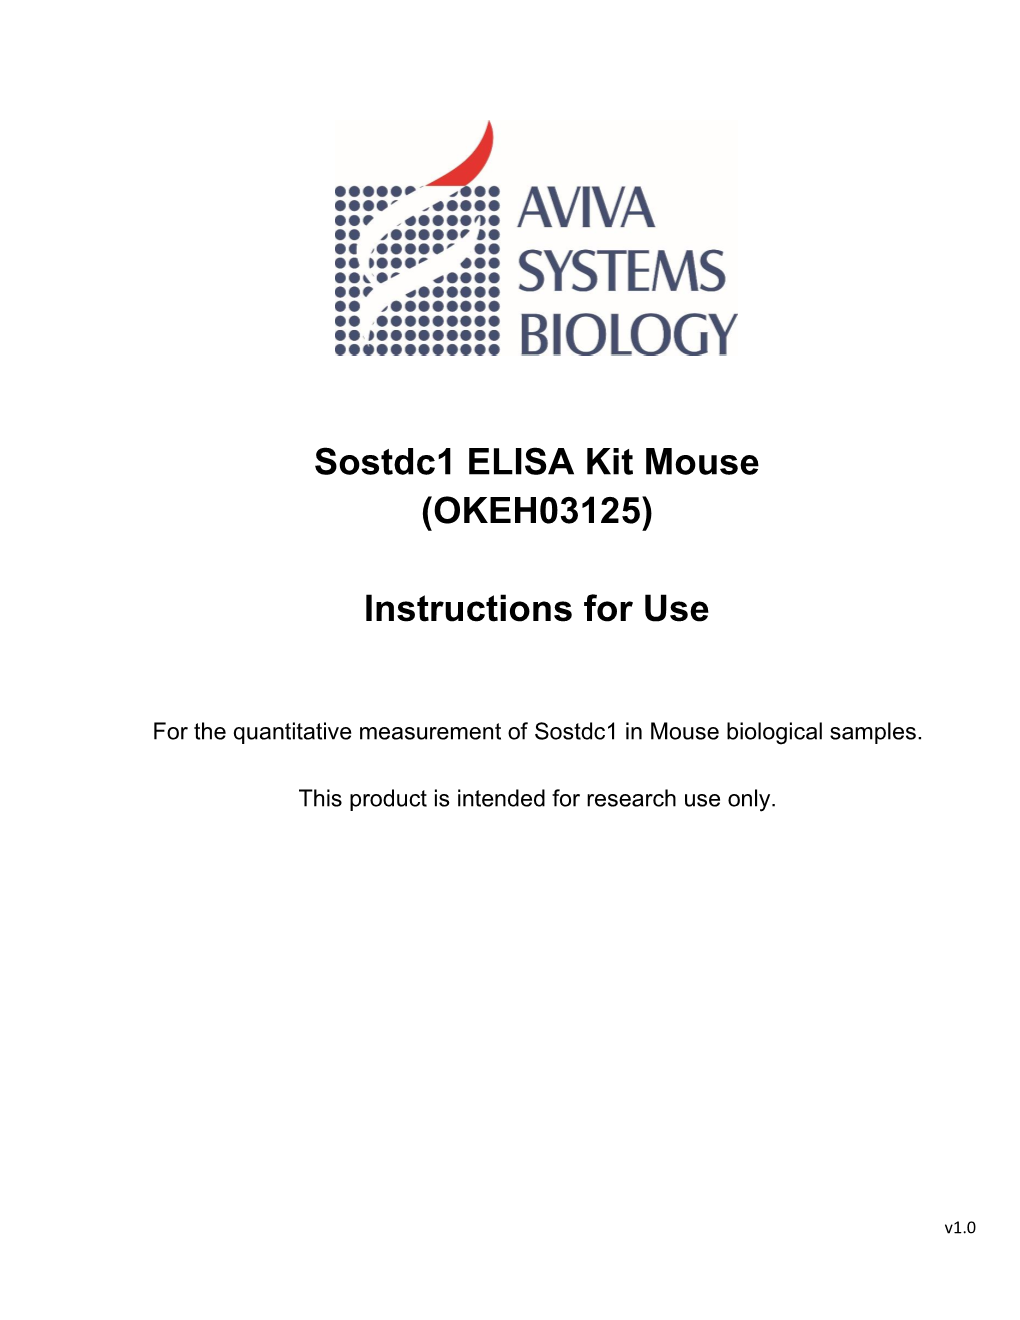 Sostdc1 ELISA Kit Mouse (OKEH03125)